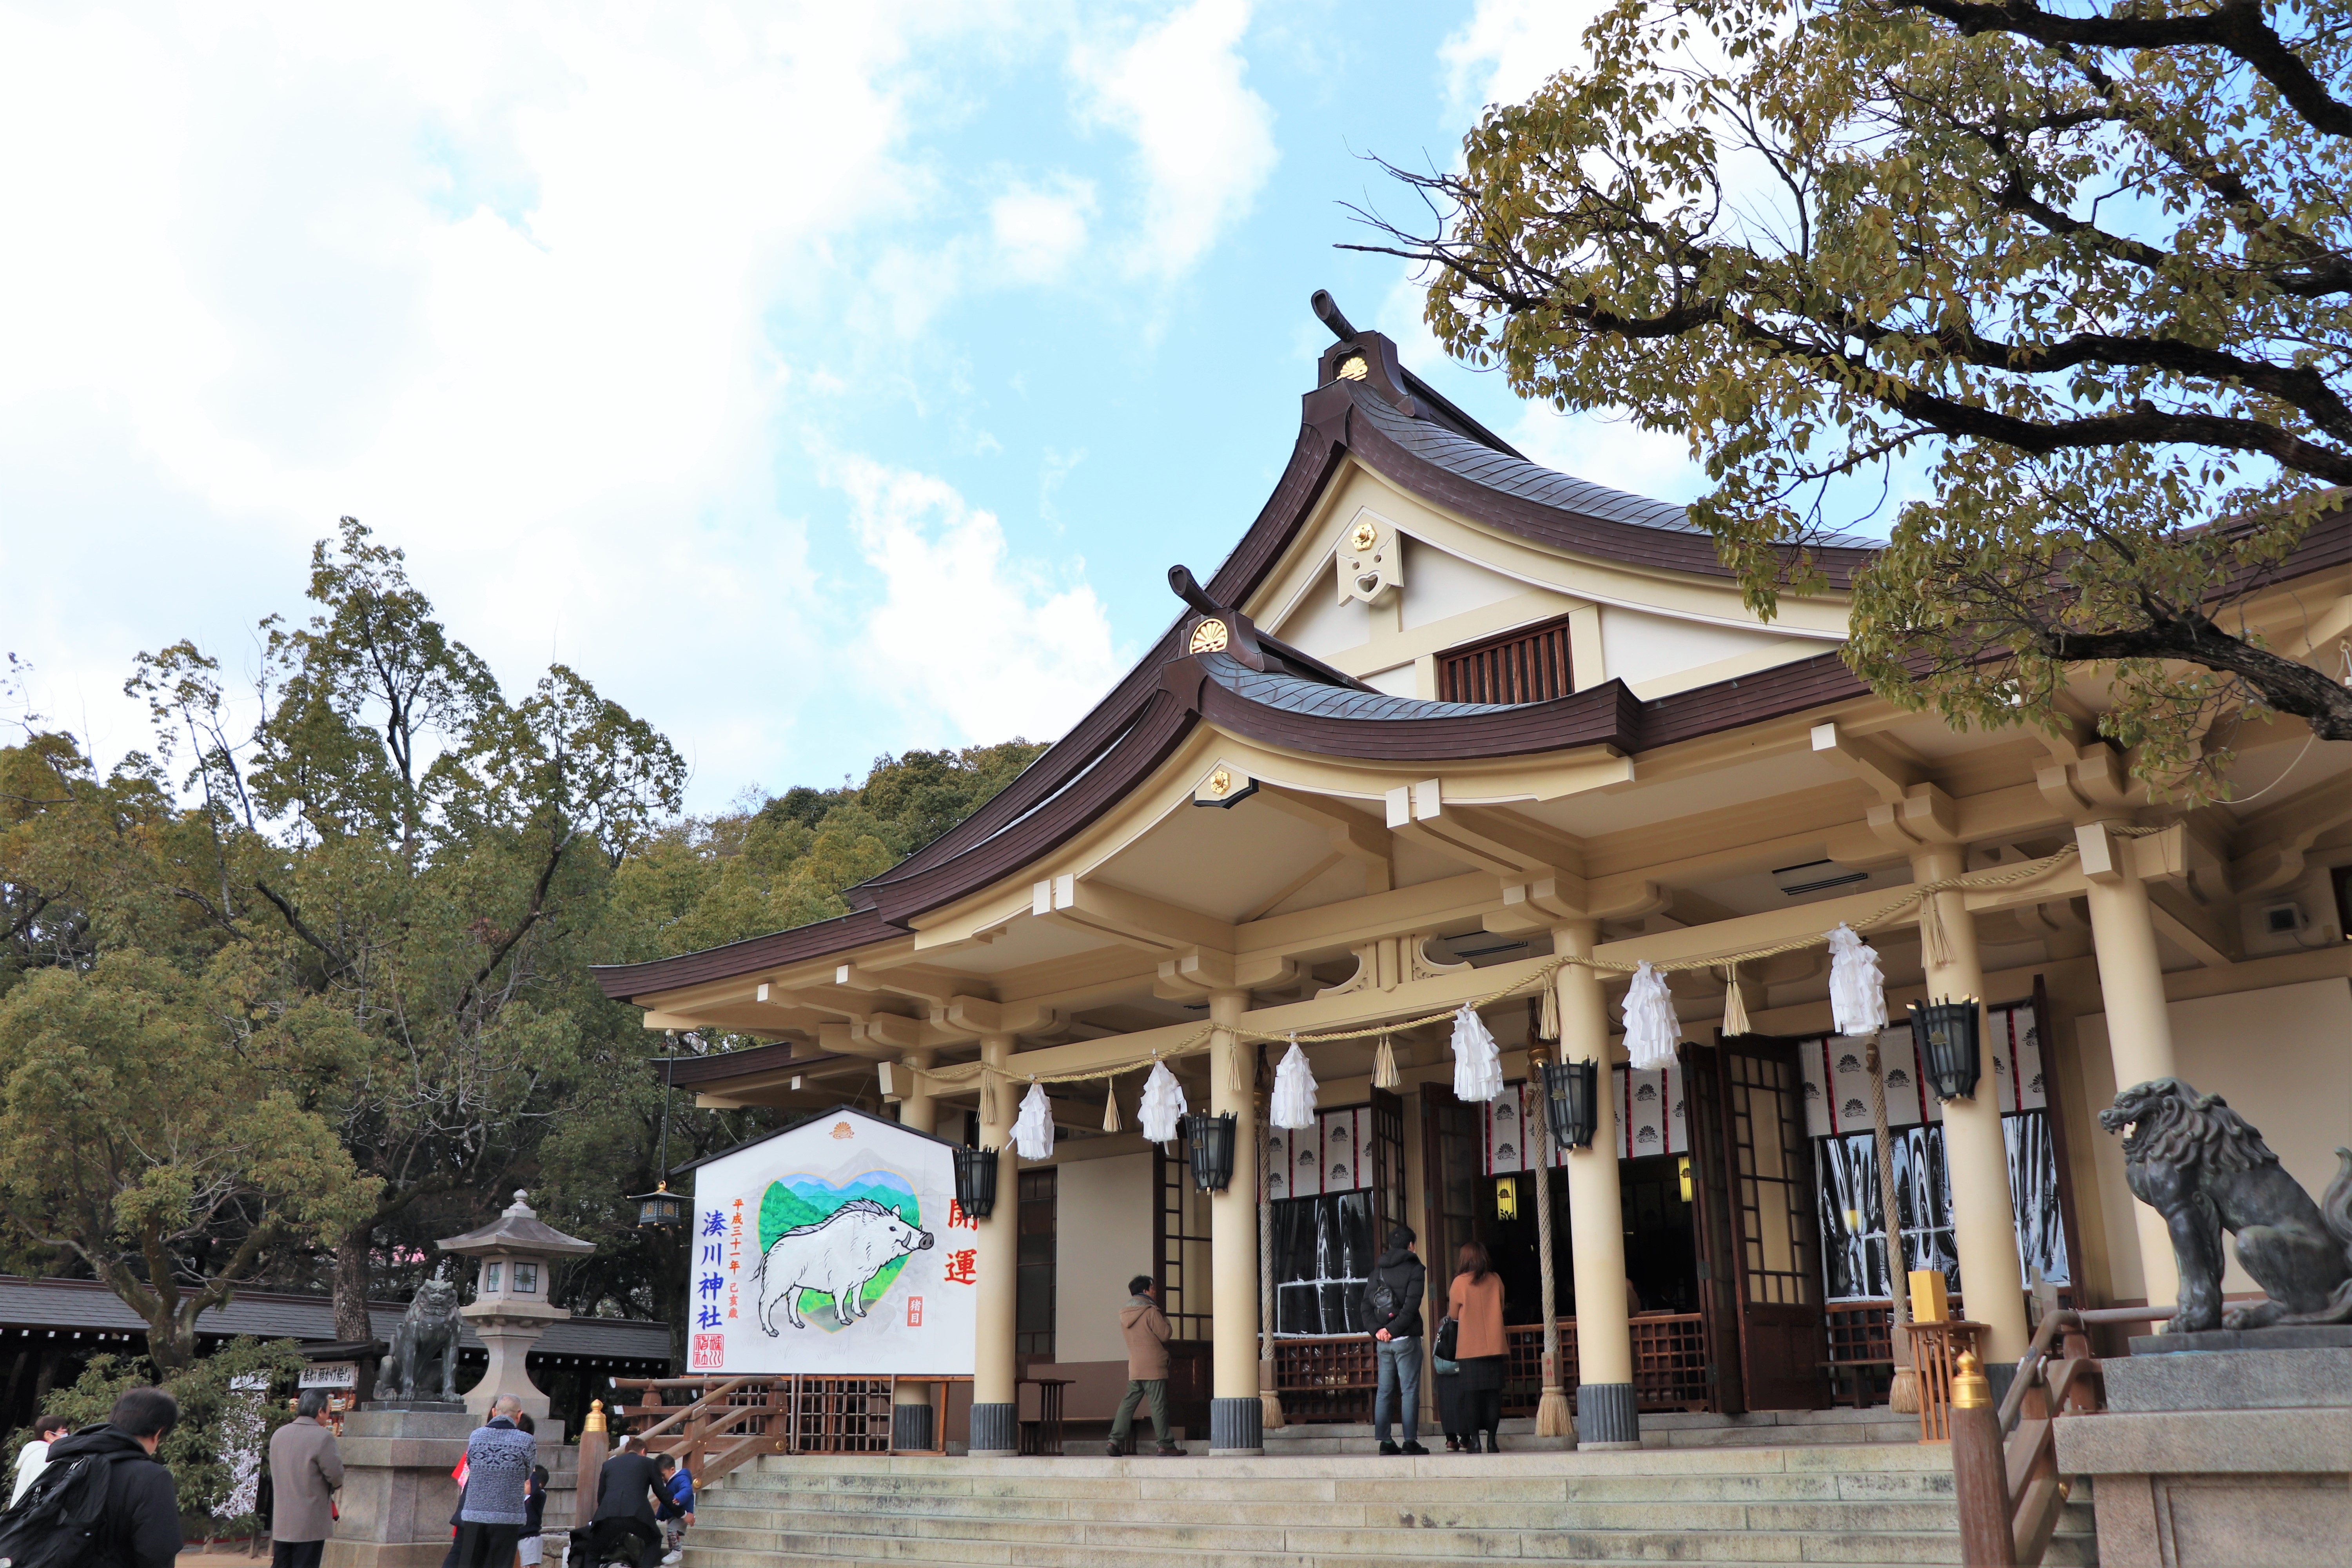 main building of Minatogawa Shrine; dedicated to Kusunoki Masashige